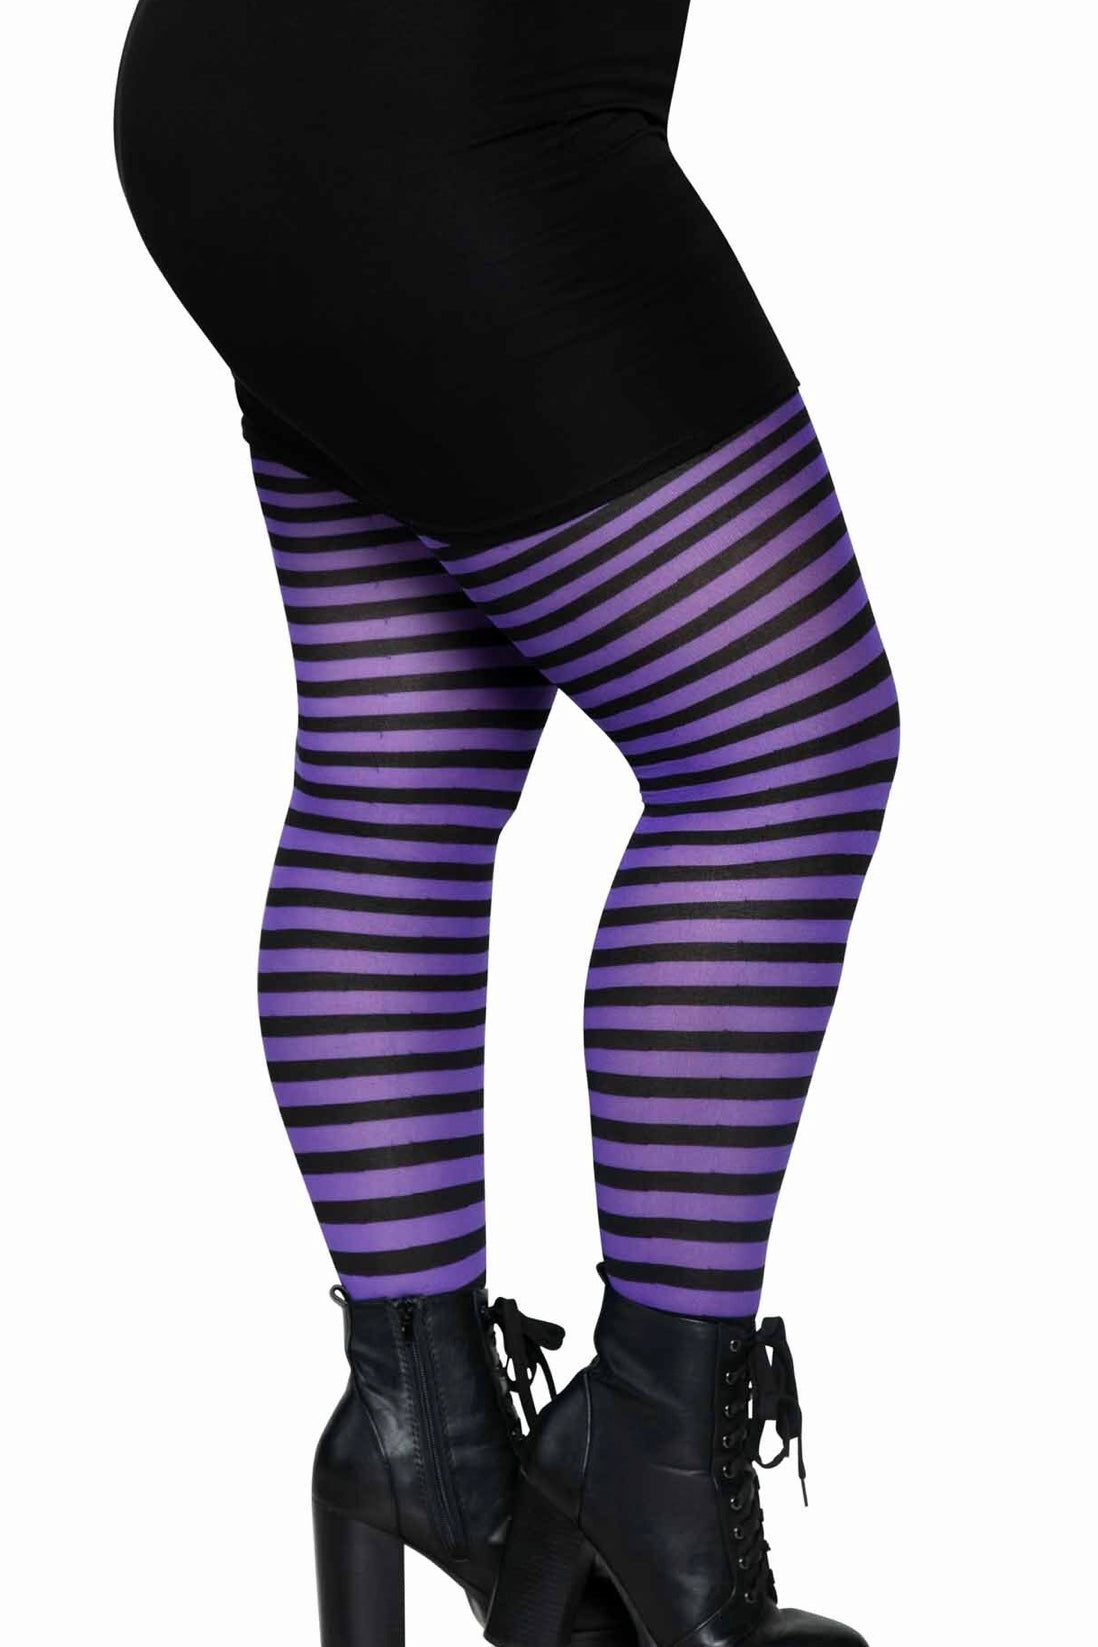 Striped tights black/purple - CurvynBeautiful 